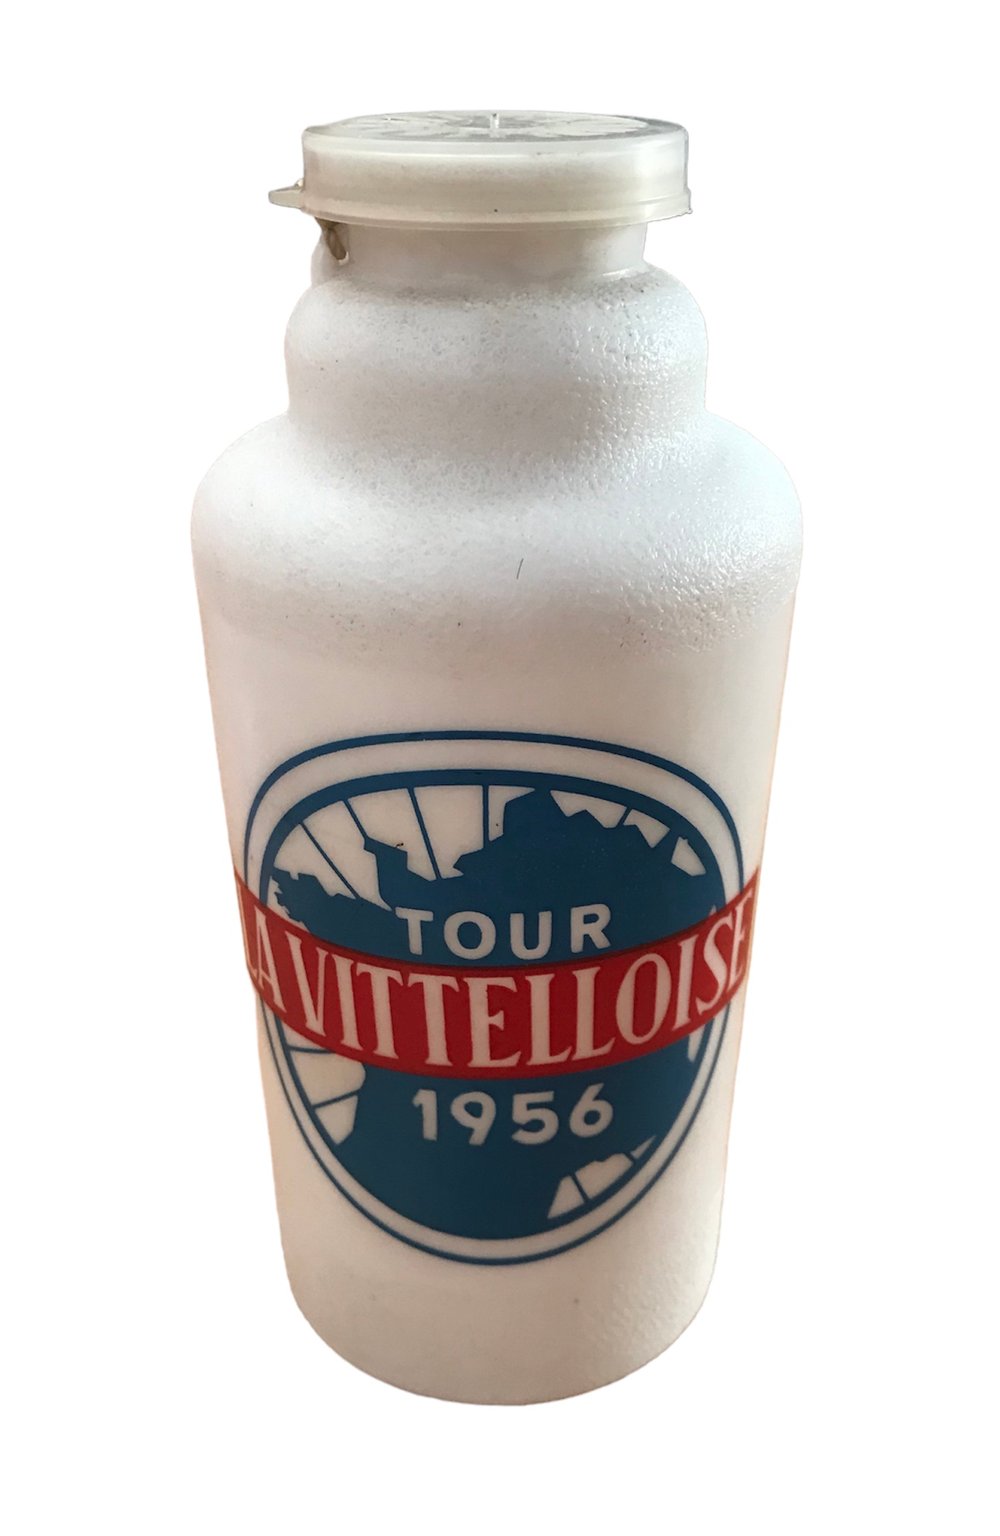 1956 - Tour de France - La Vitelloise 